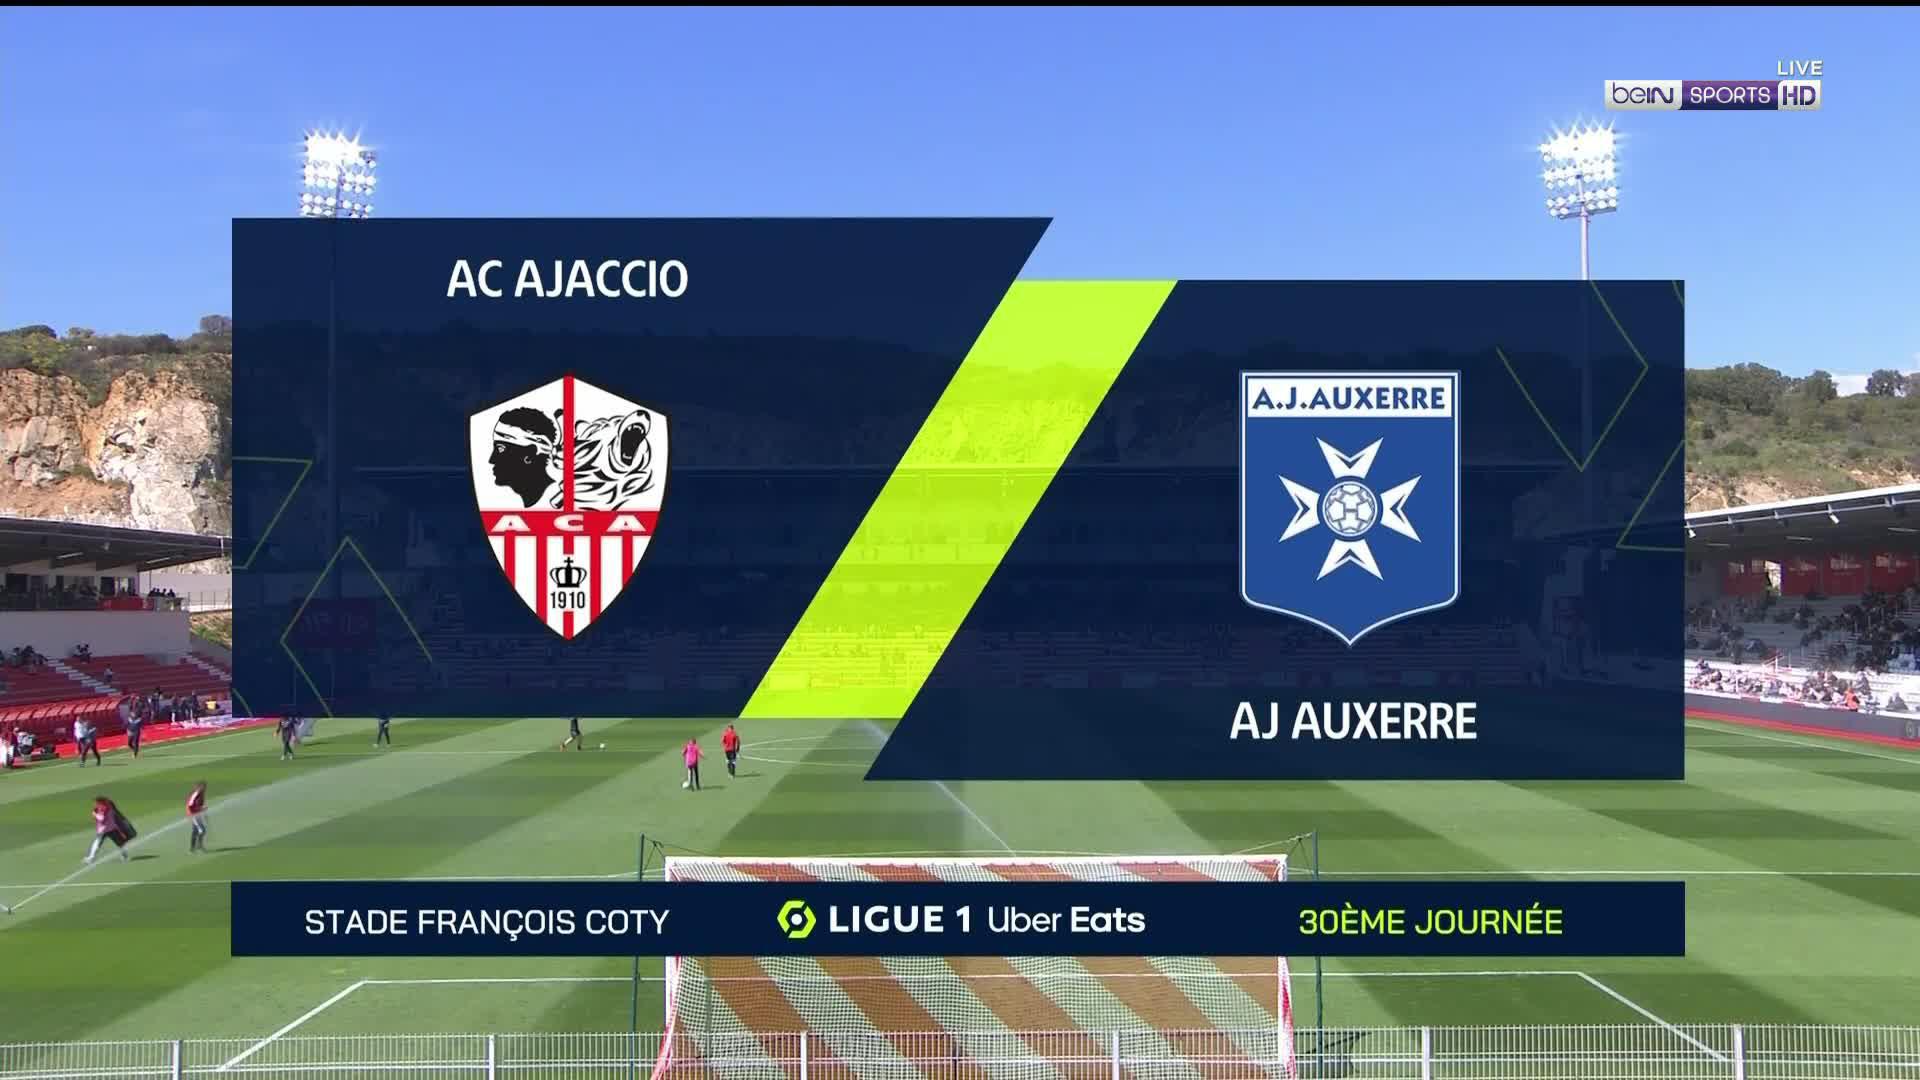 Hl - Ligue 1 - Ajaccio 0-3 Auxerre